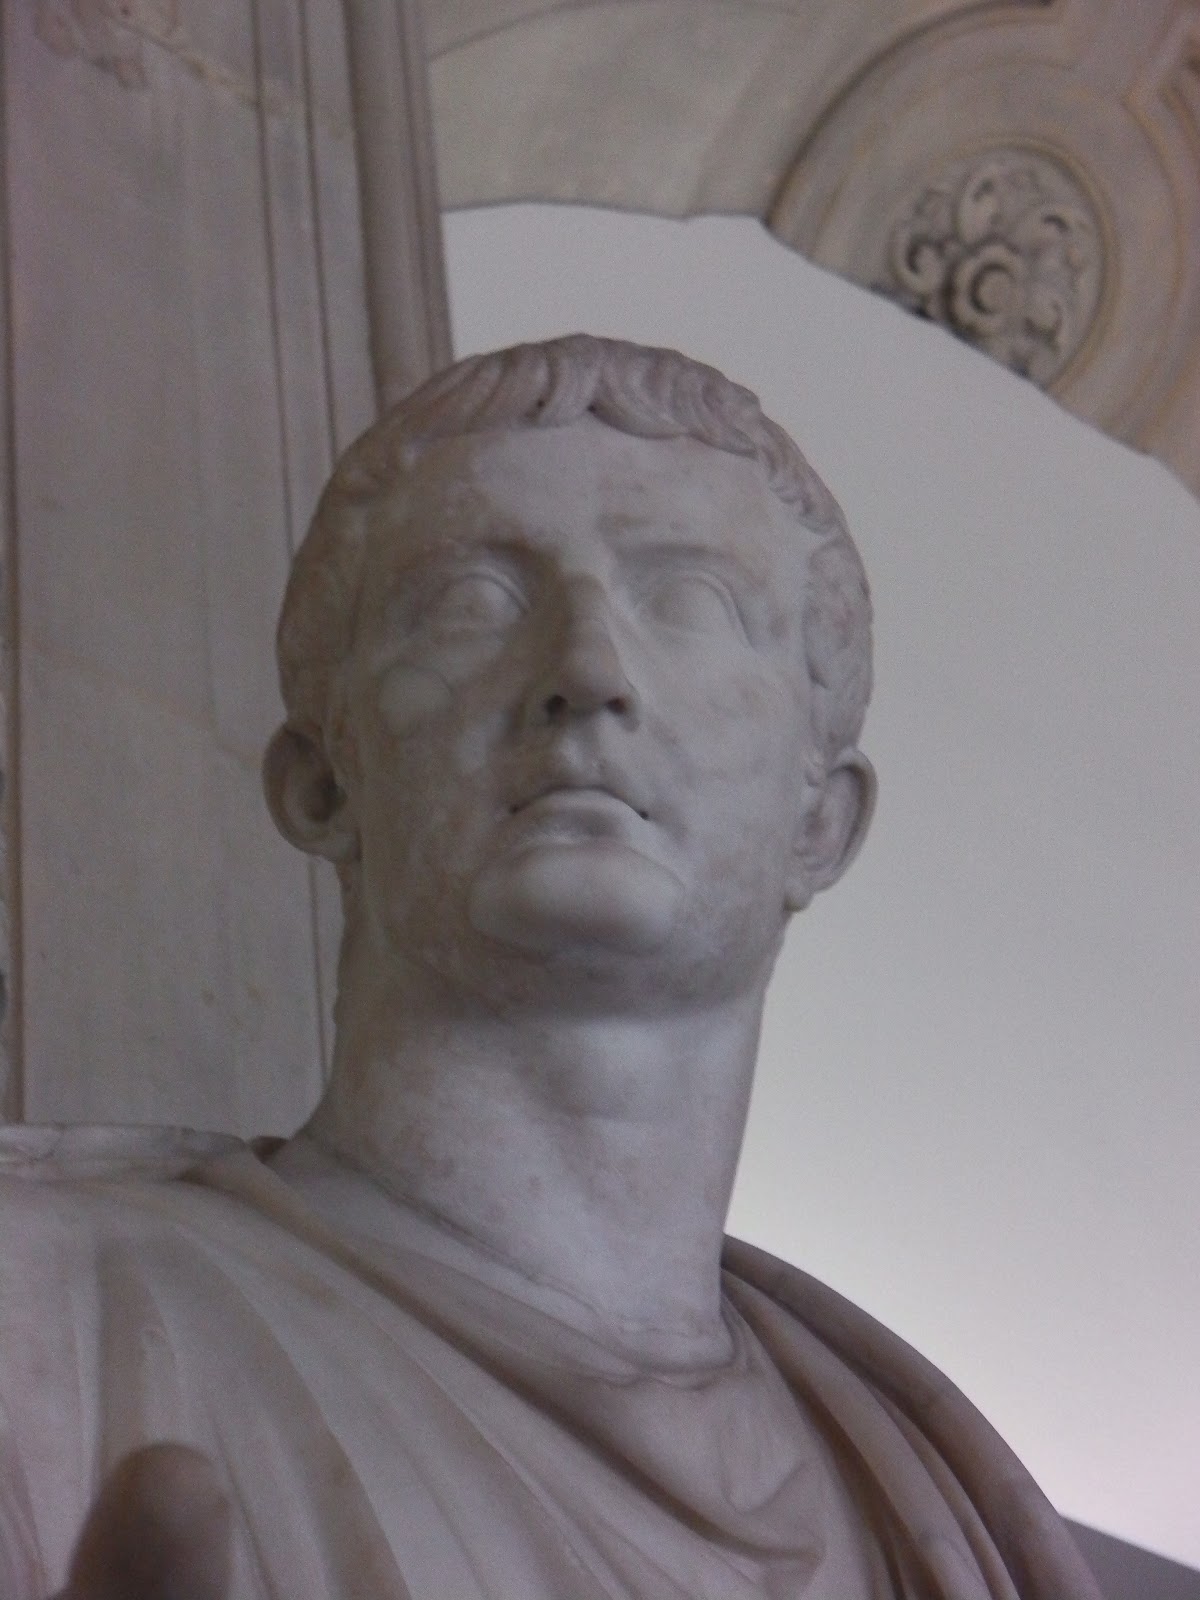 L'empereur Tibère, mon chouchou... (Musée du Louvre)